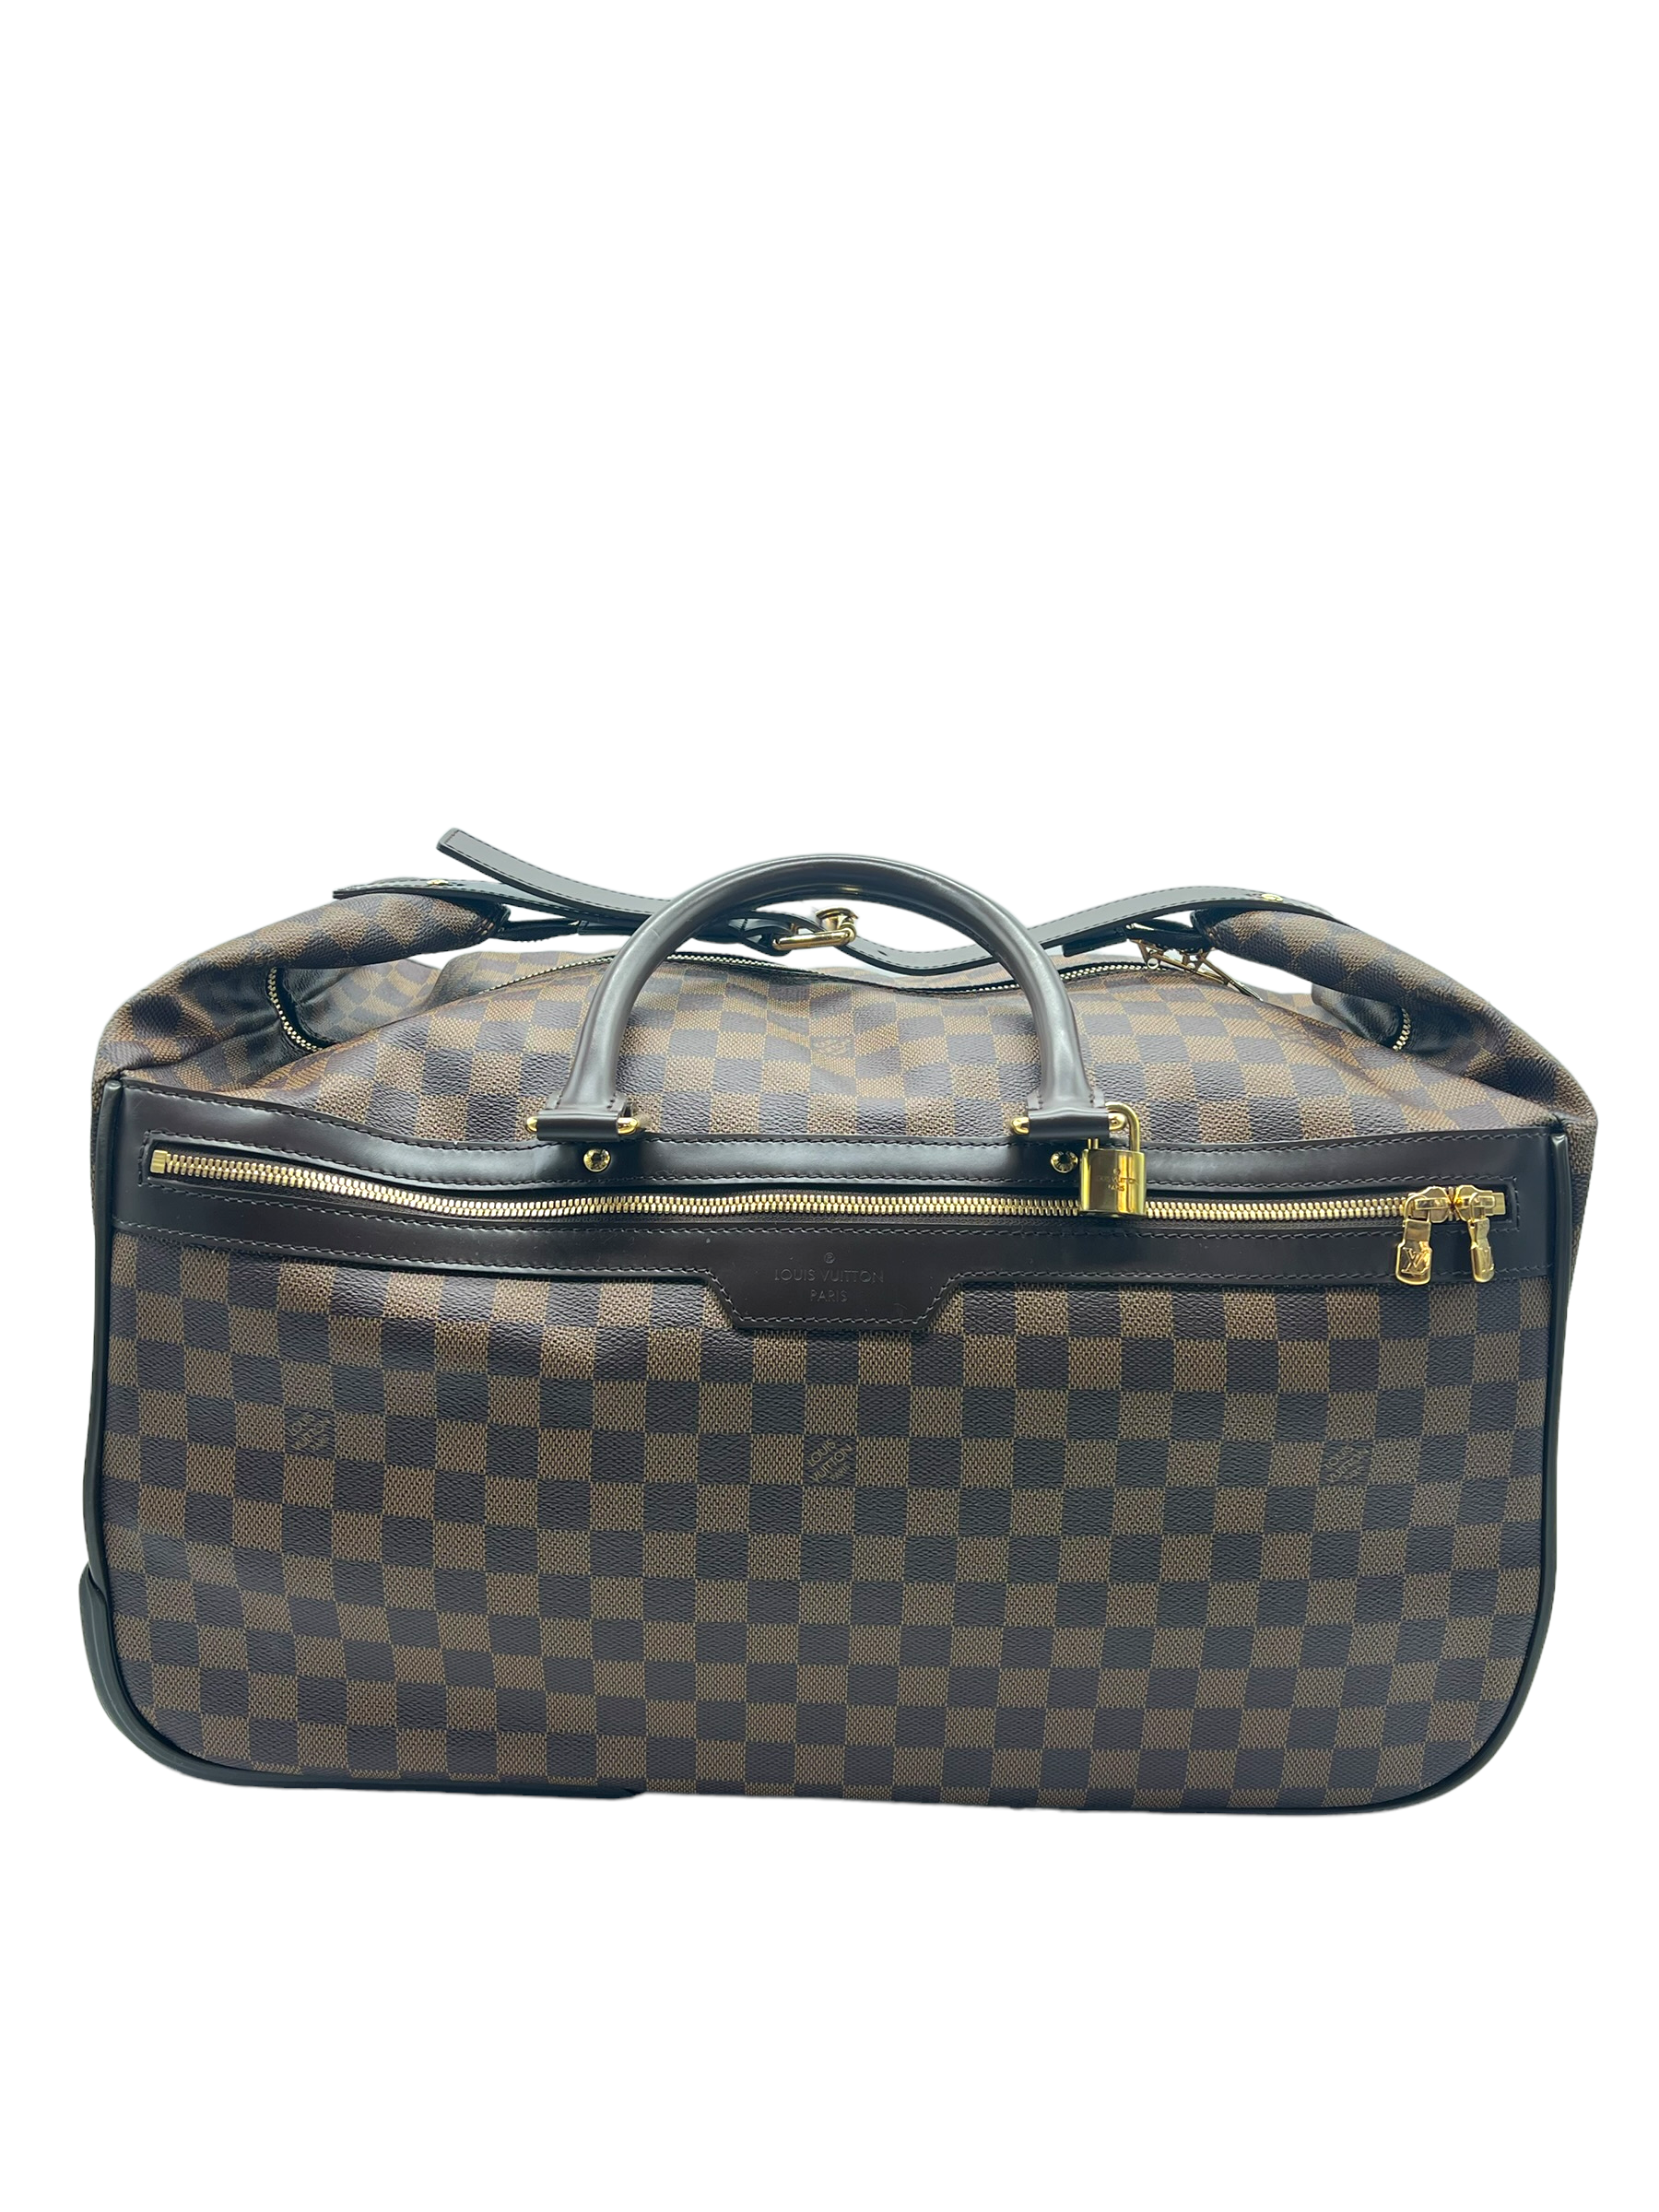 Louis Vuitton Damier Ebene Eole 50 Travel Bag / Suitcase